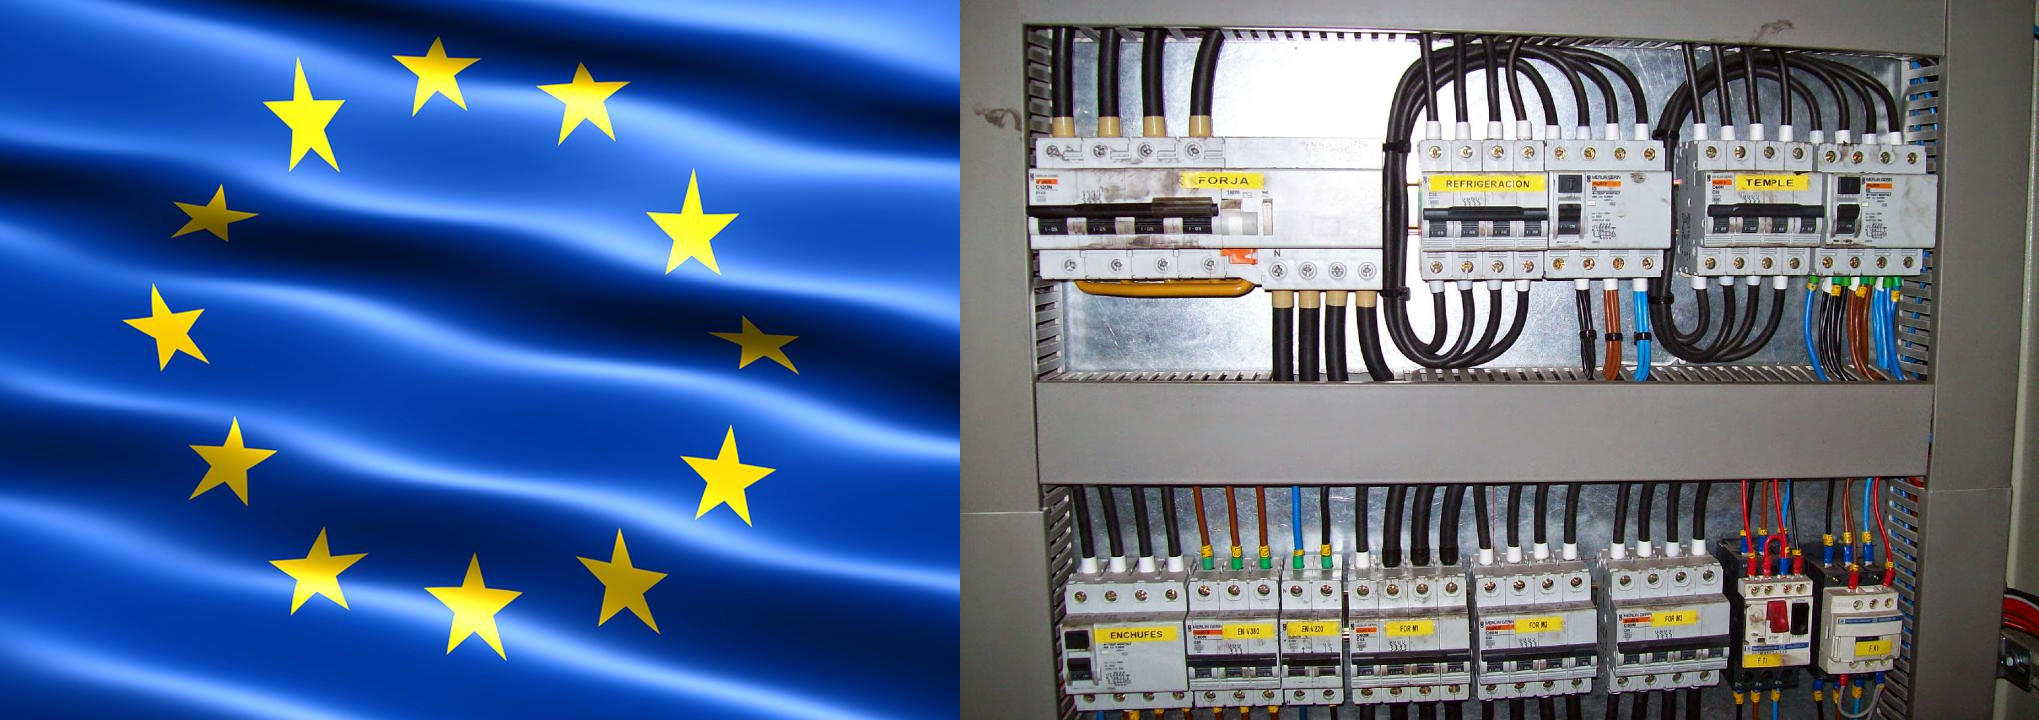 Nueva lista de normas armonizadas sobre seguridad eléctrica